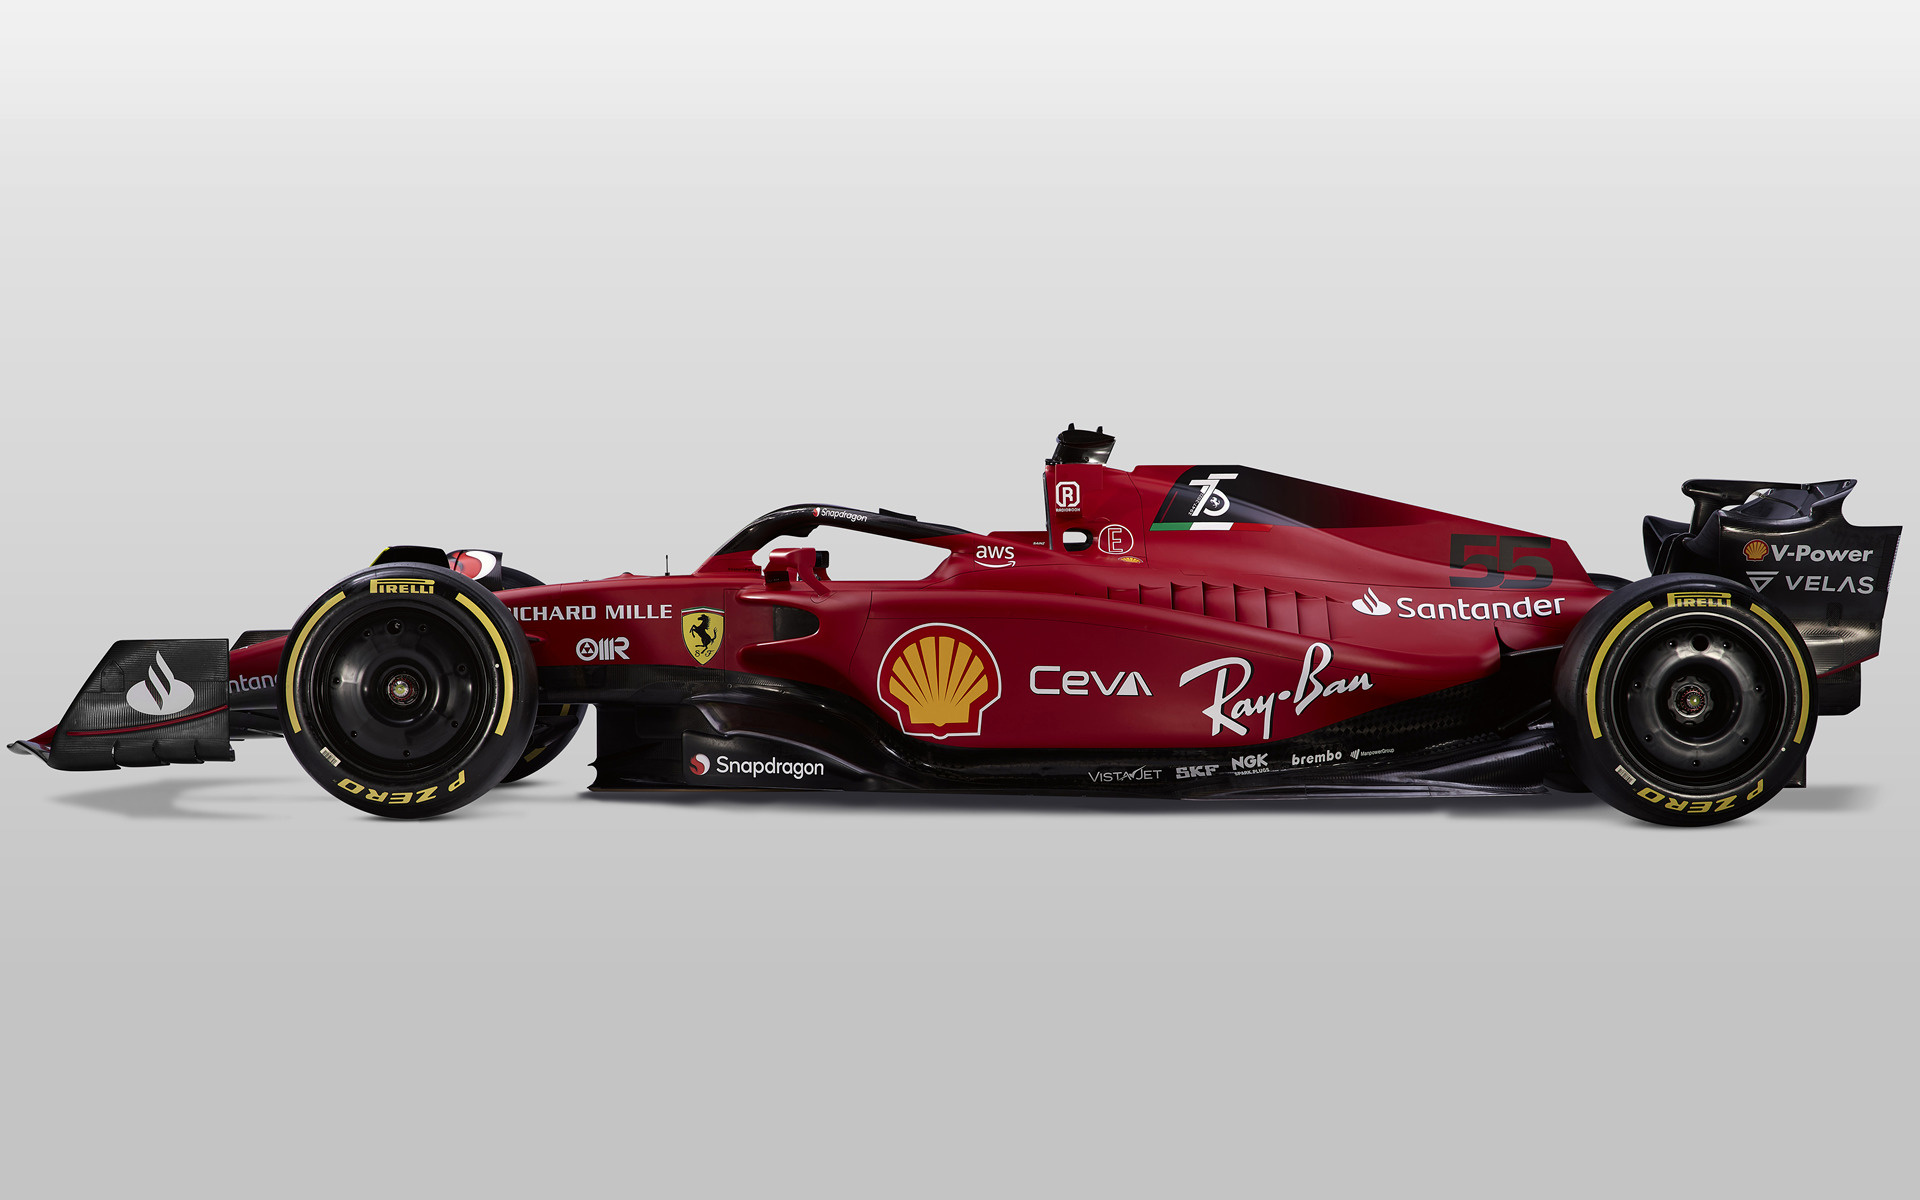 Ferrari F1-75 wallpaper for laptop download Full HD free 1920x1200